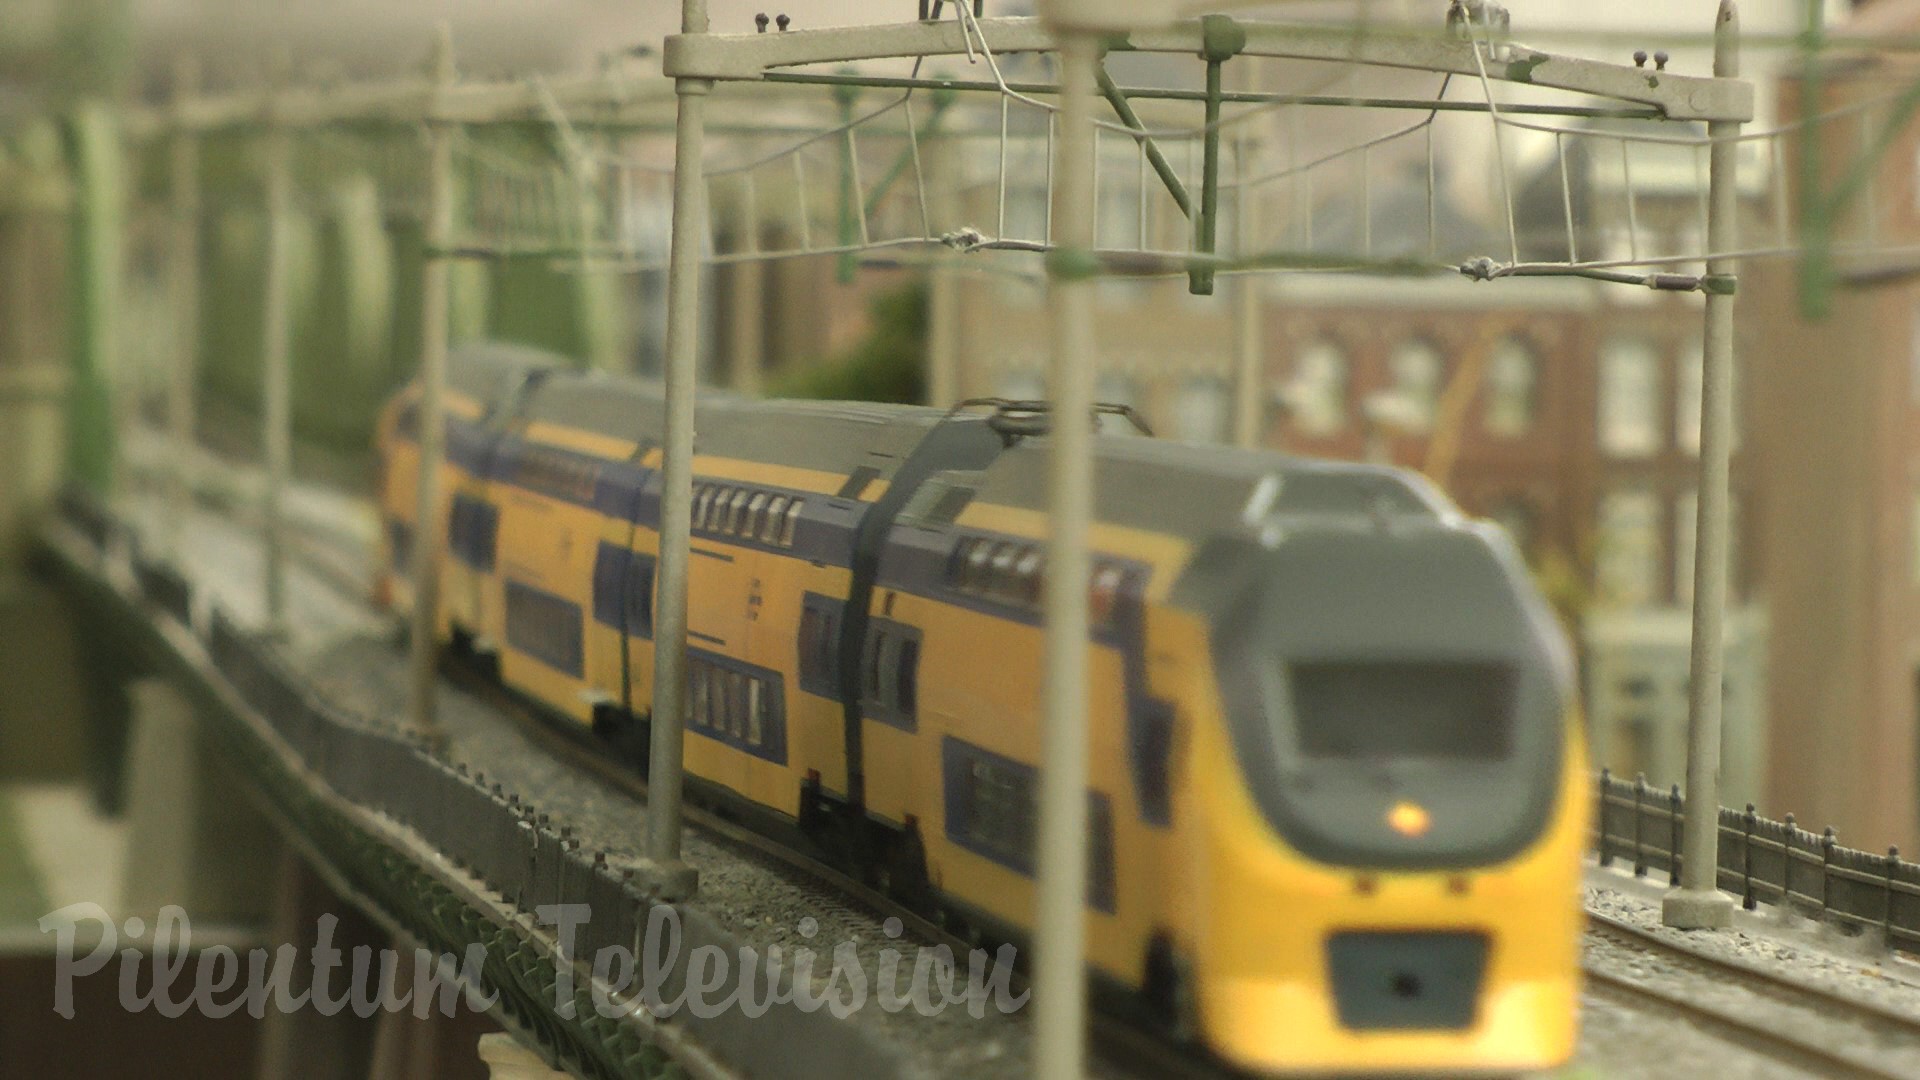 רוטרדם: דגמי רכבות ו רכבת מינאטורית